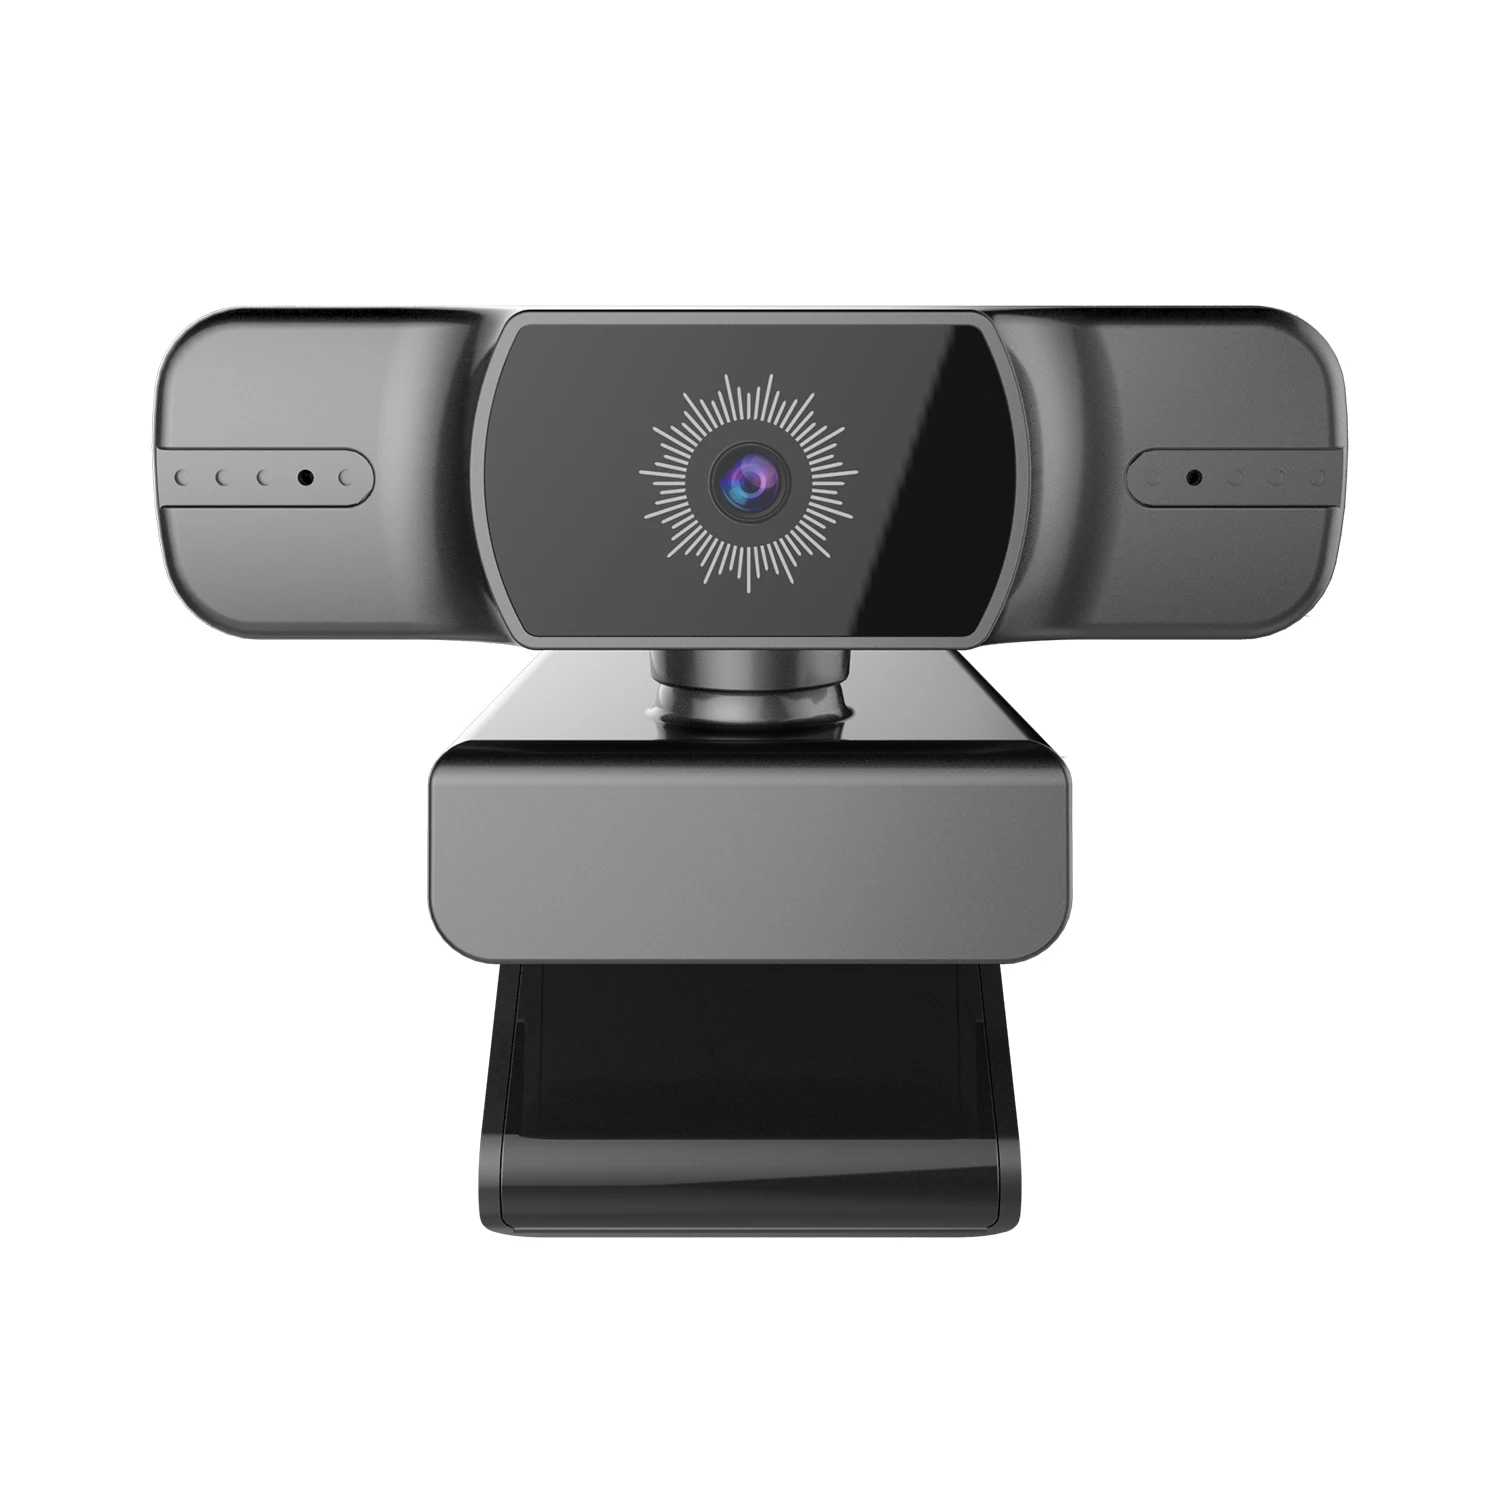 Usb веб камера hd 1080p hkfz Автофокус ПК камера USB веб камера для ПК ноутбука широкоугольная веб камера с микрофоном веб камера на ПК ноутбук|Веб-камеры|   | АлиЭкспресс